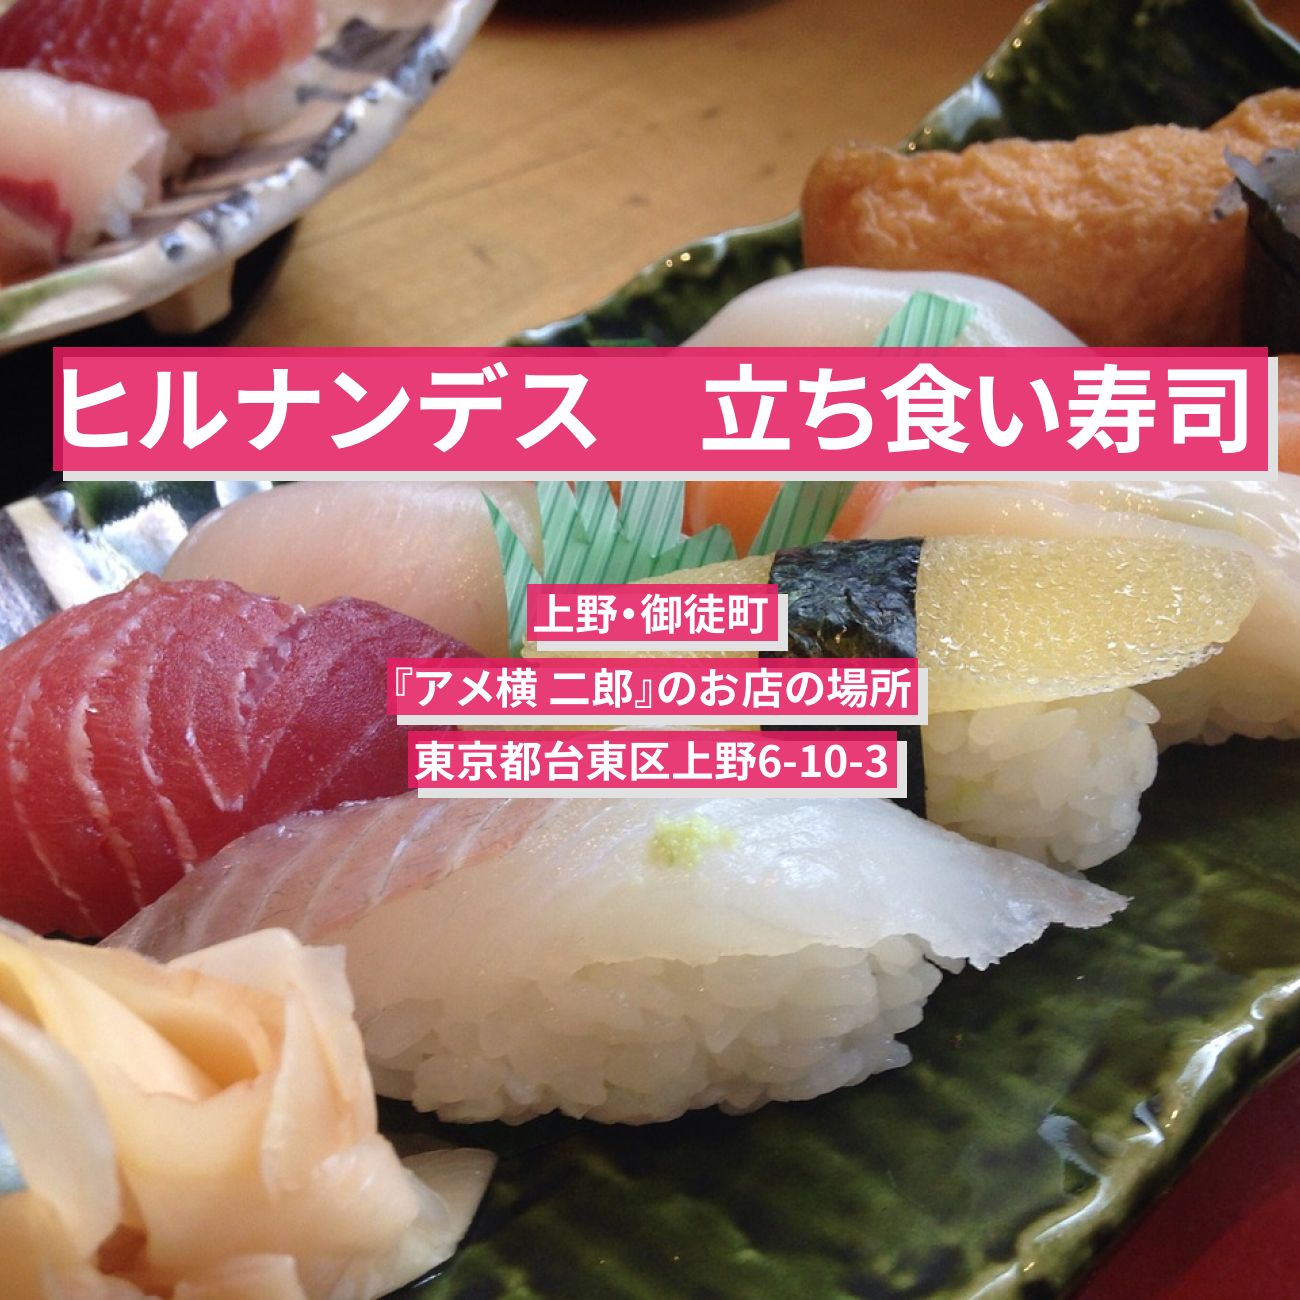 【ヒルナンデス】立ち食い創作寿司（炙りサーモン・うなぎバター）上野・御徒町『アメ横 二郎』のお店の場所